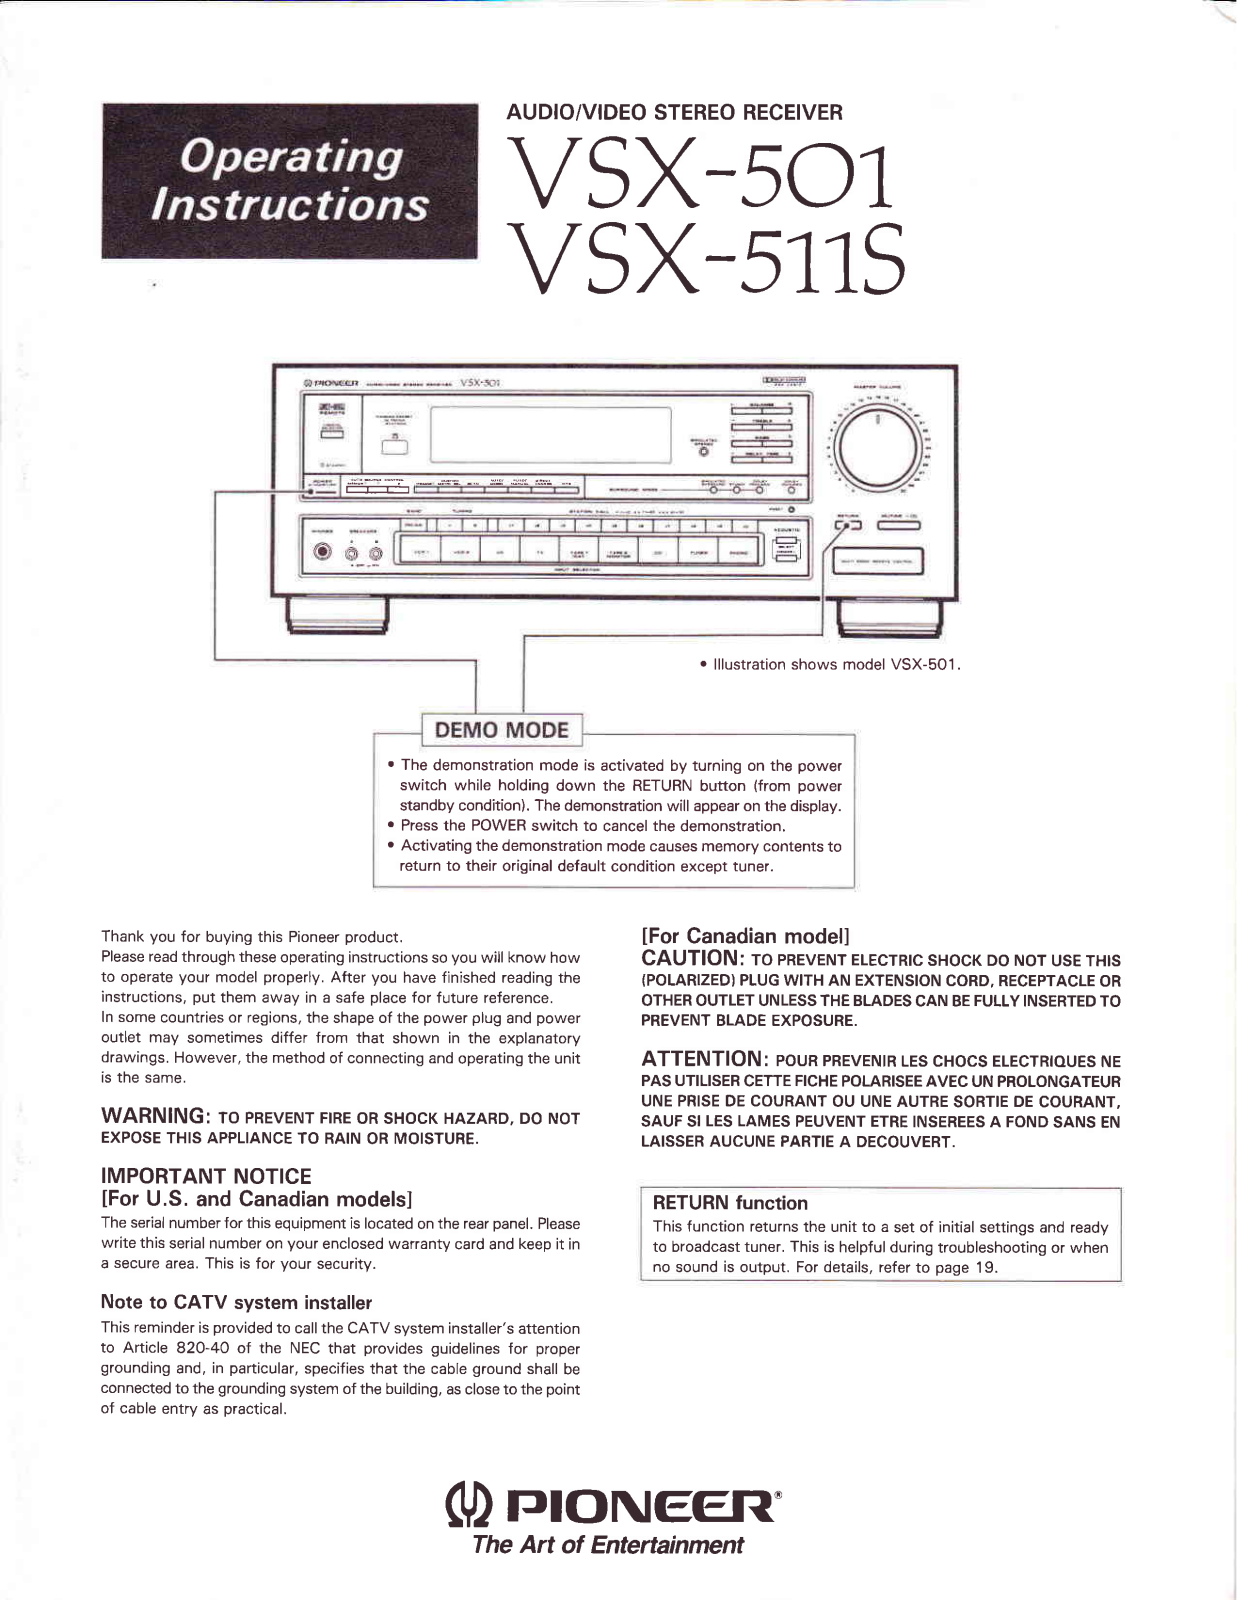 Pioneer VSX-501, VSX-511S Manual